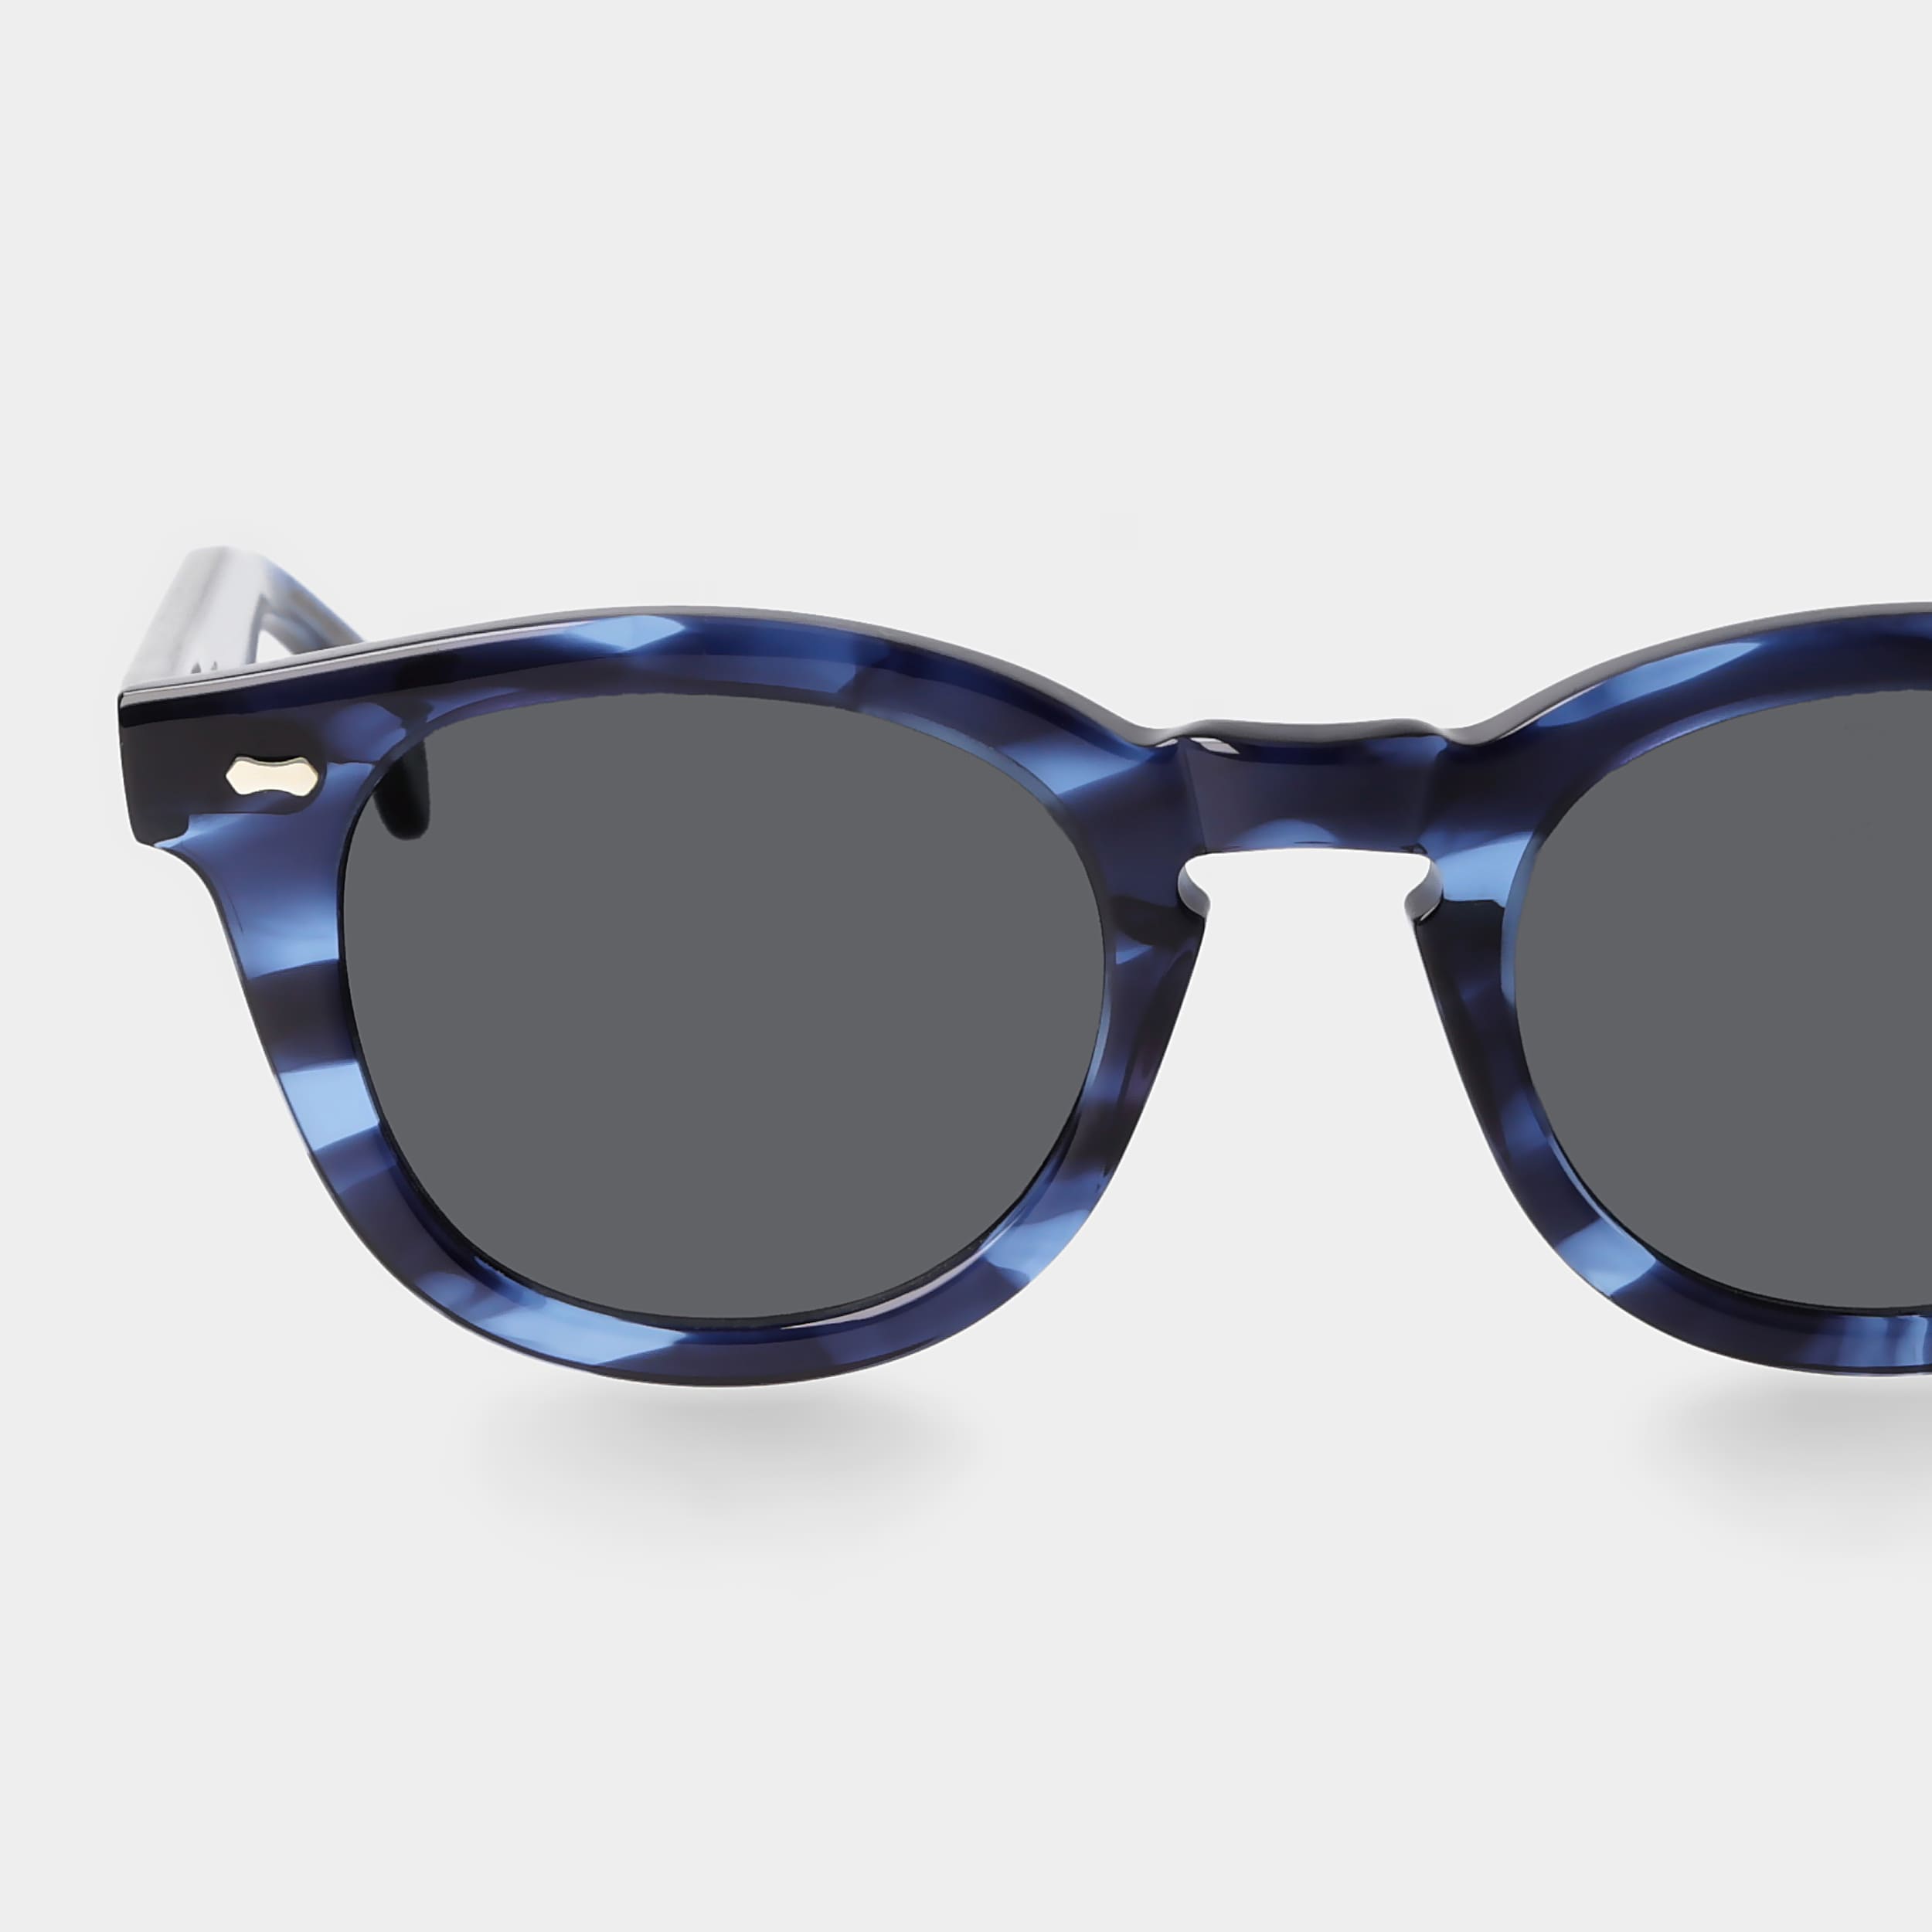 sunglasses-donegal-ocean-gradient-grey-sustainable-tbd-eyewear-lens